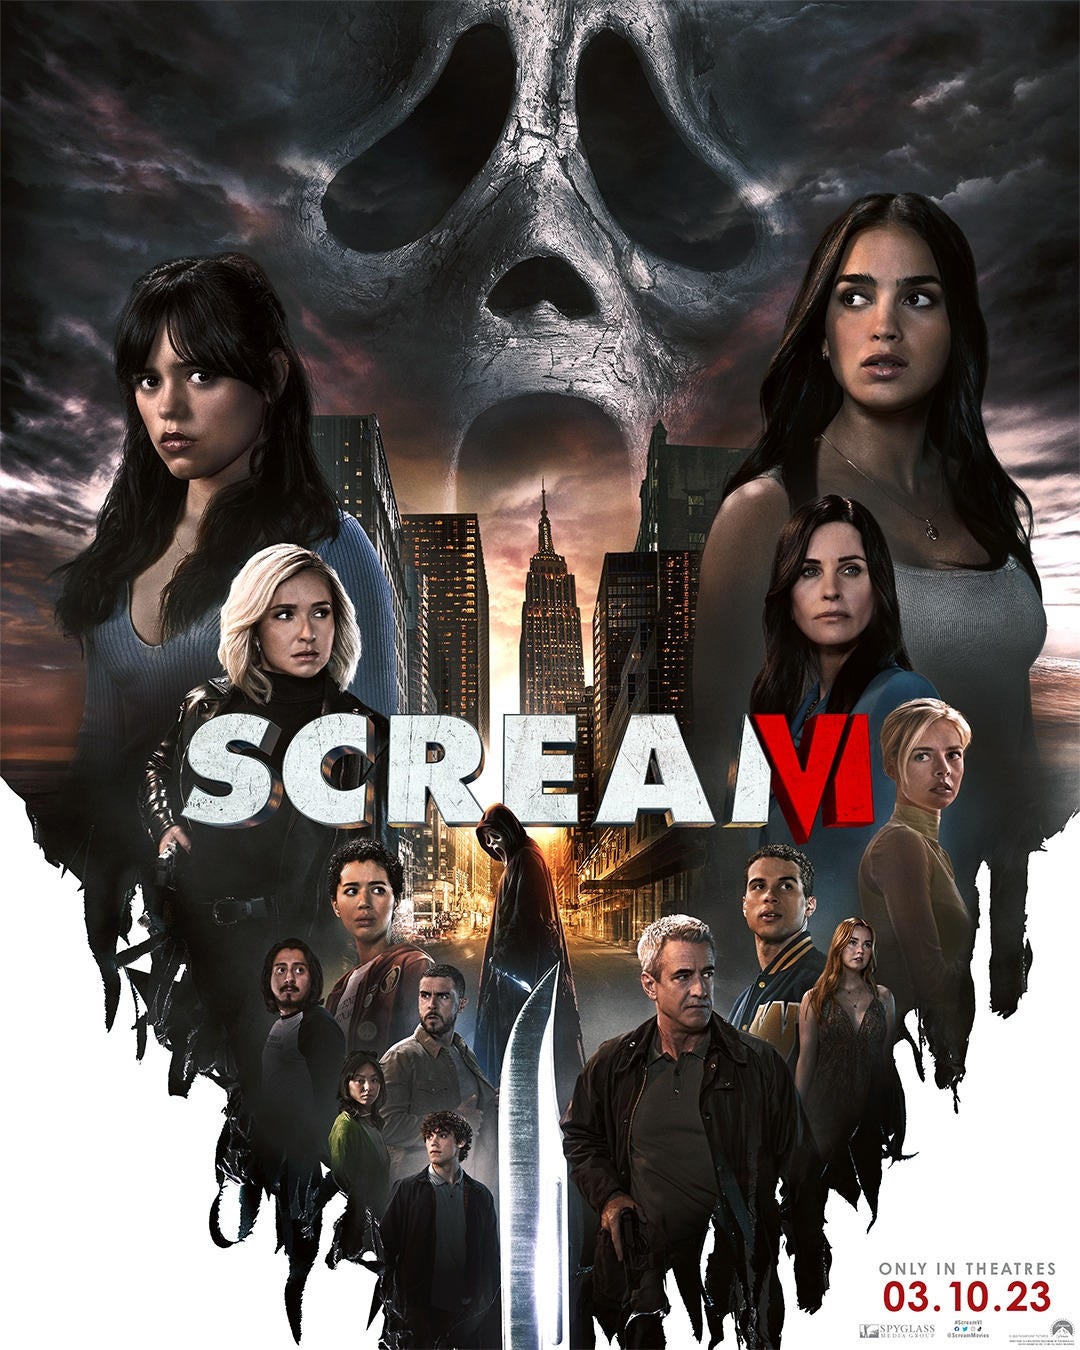 scream-vi-6-official-poster-2023.jpg